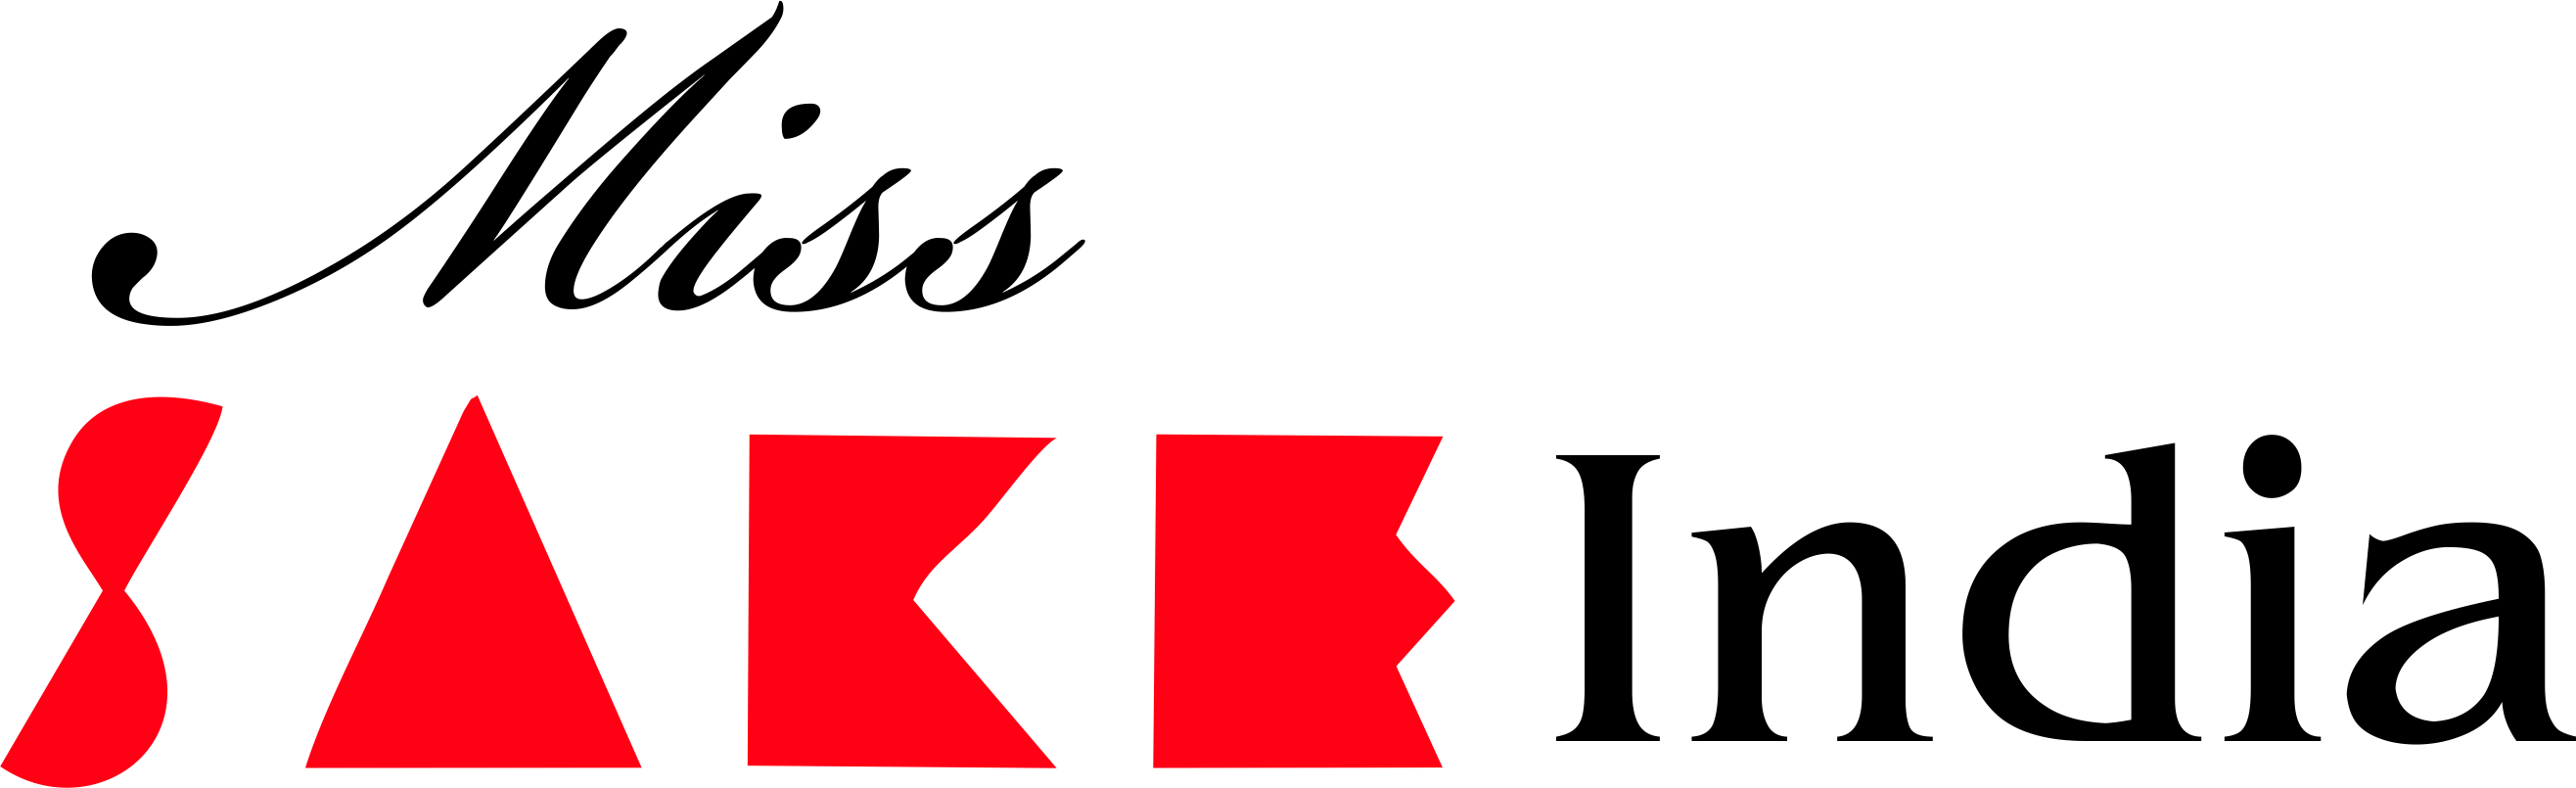 sake logo